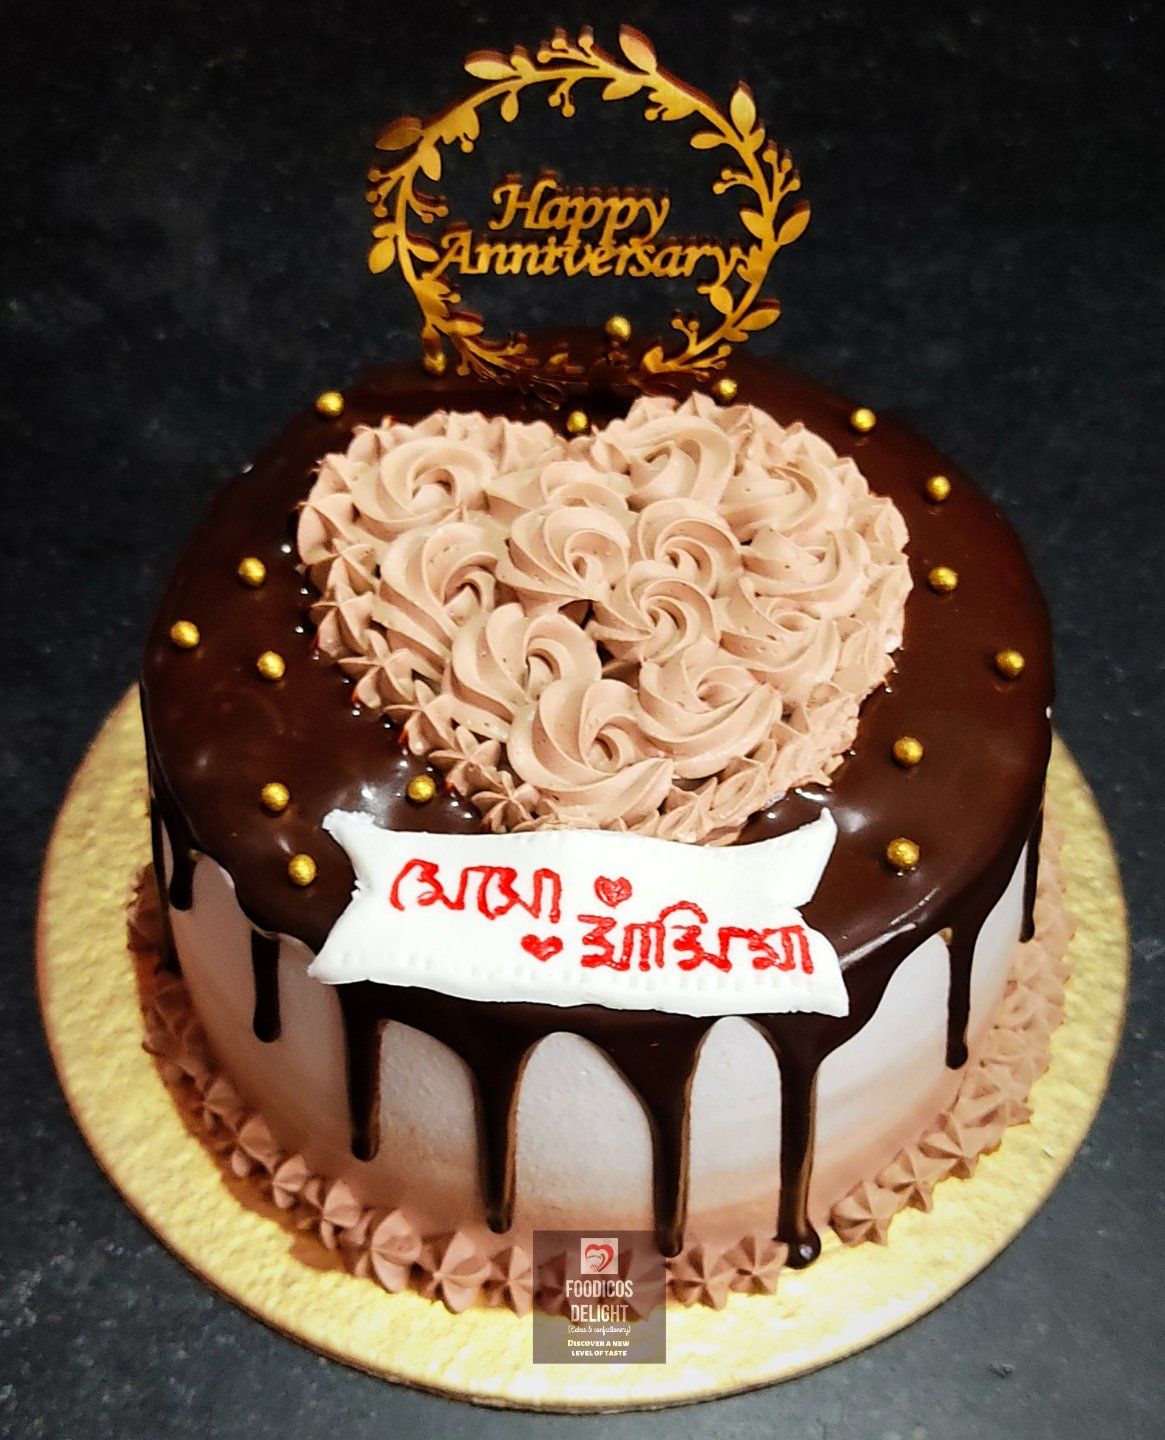 Chocolate Anniversary Photo Cake - Bakersfun